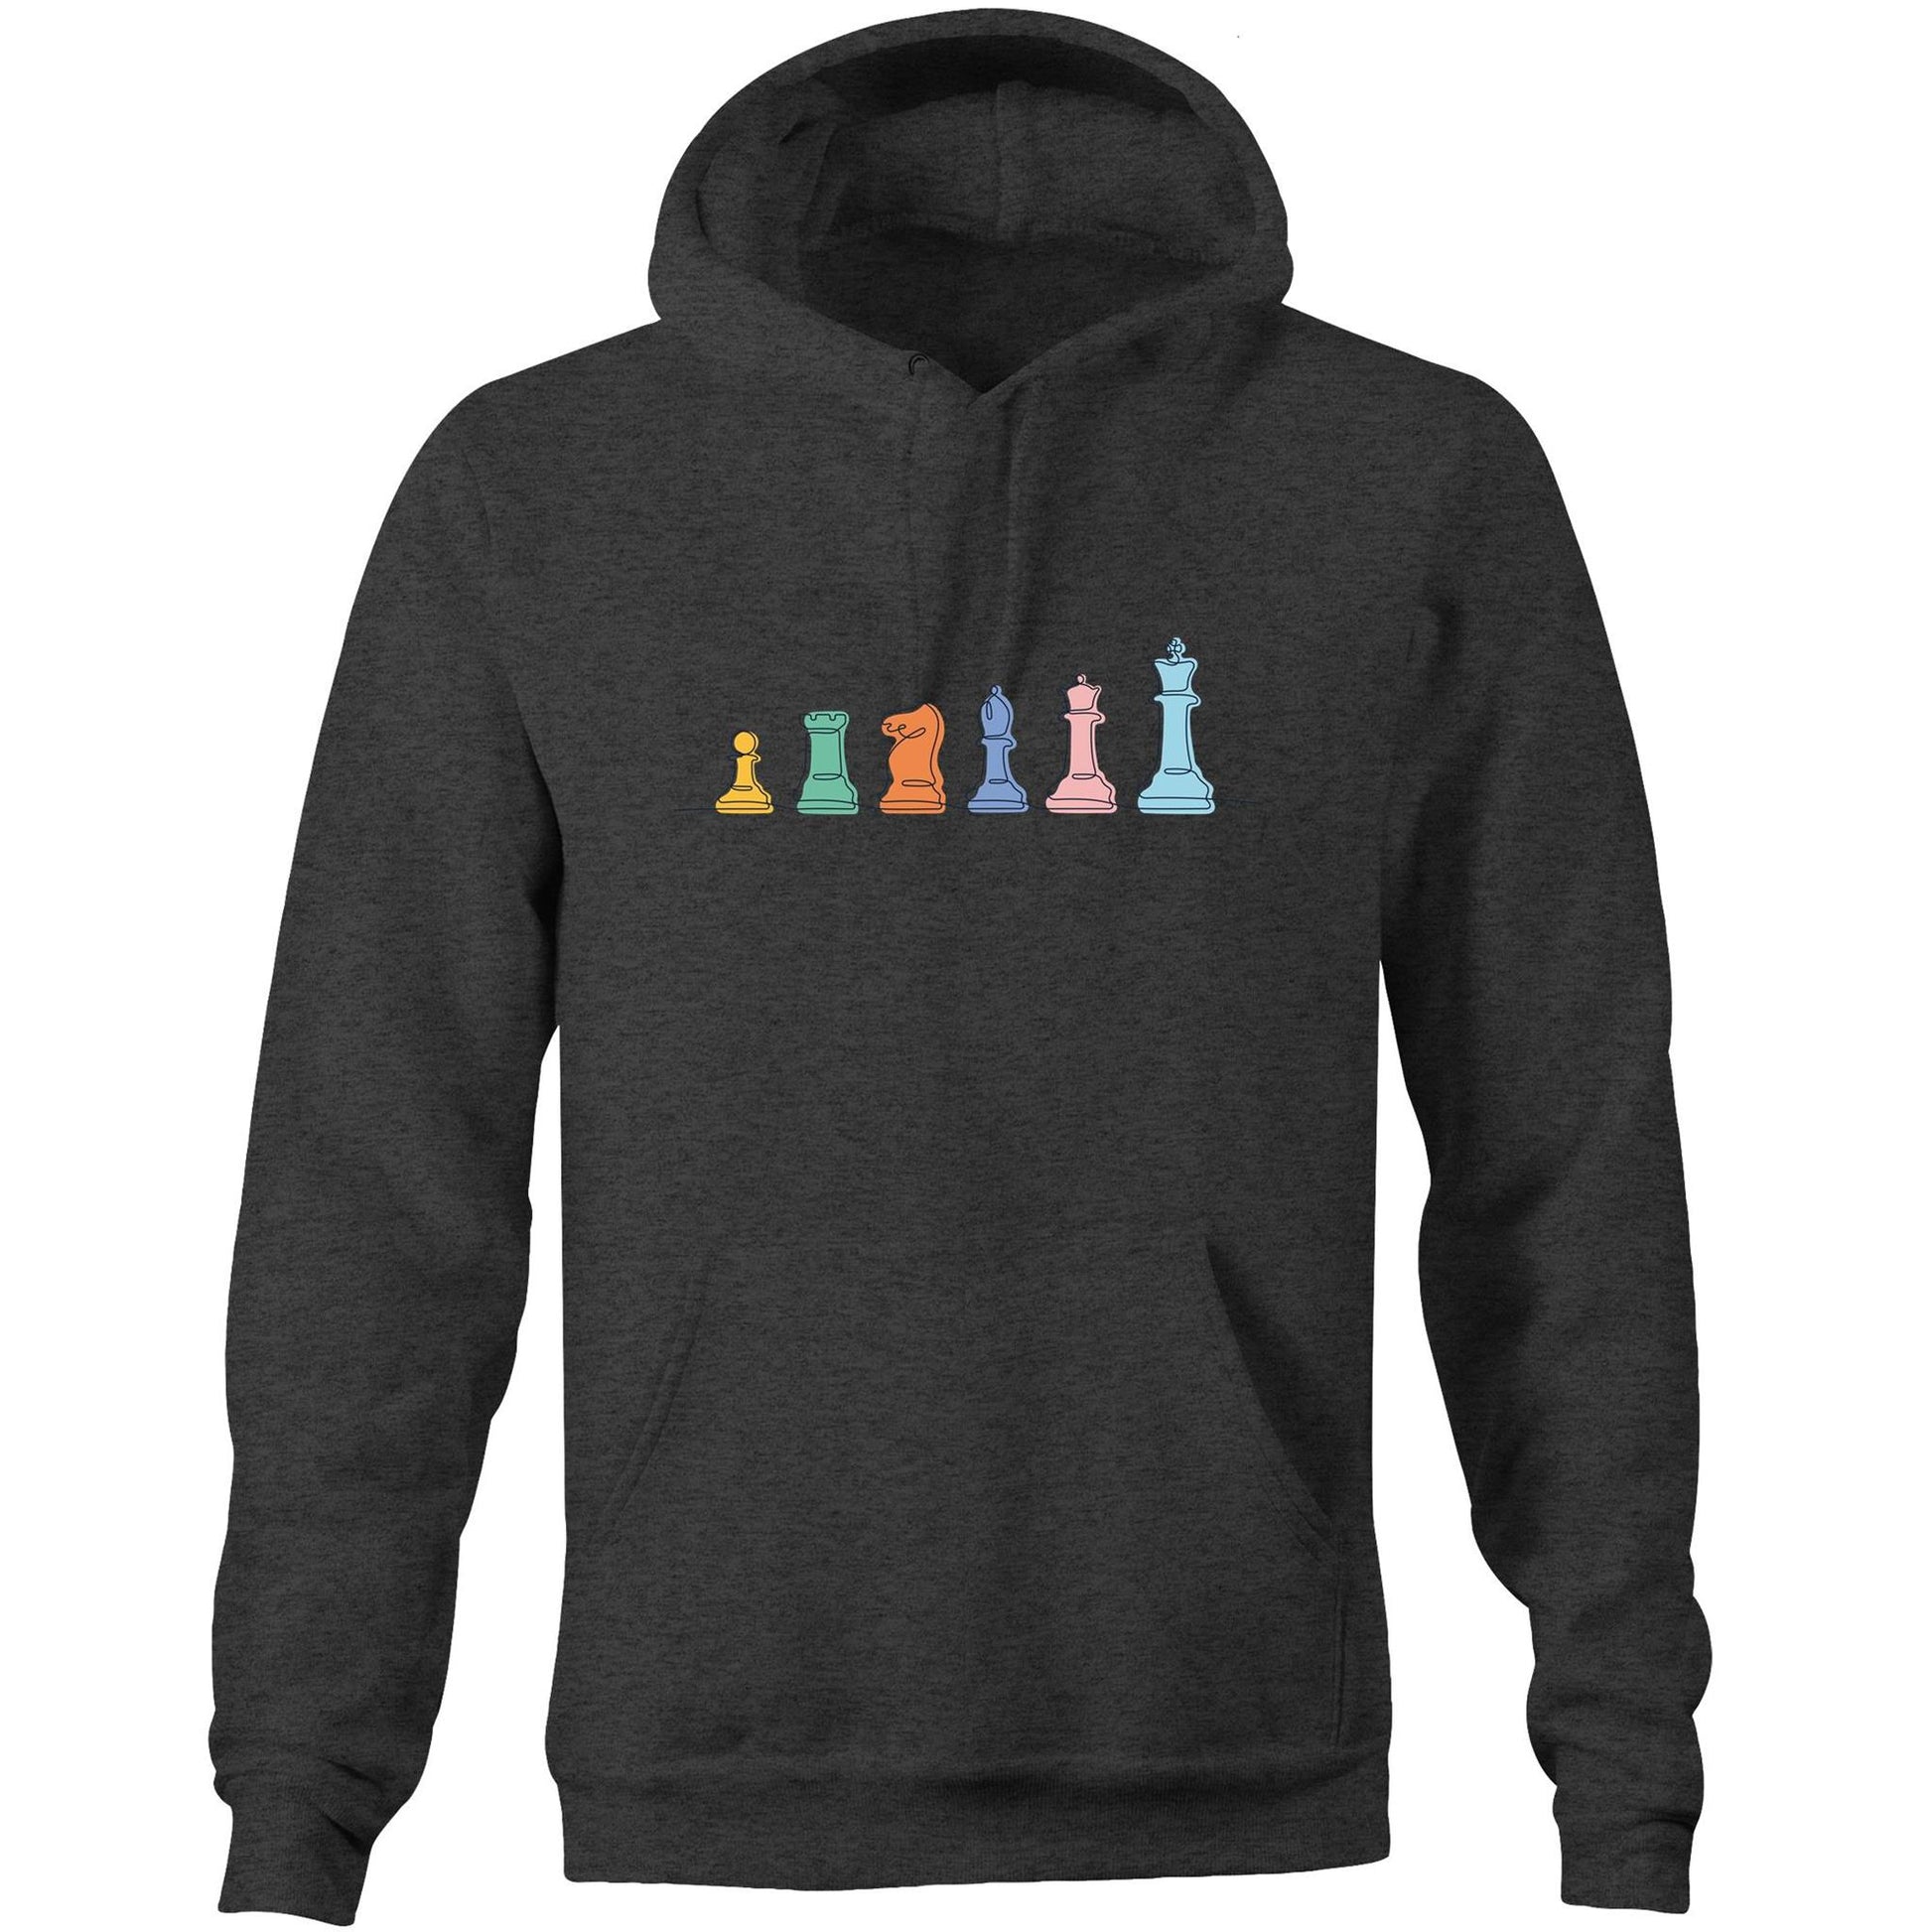 Chess - Pocket Hoodie Sweatshirt Asphalt Marle Hoodie Chess Games